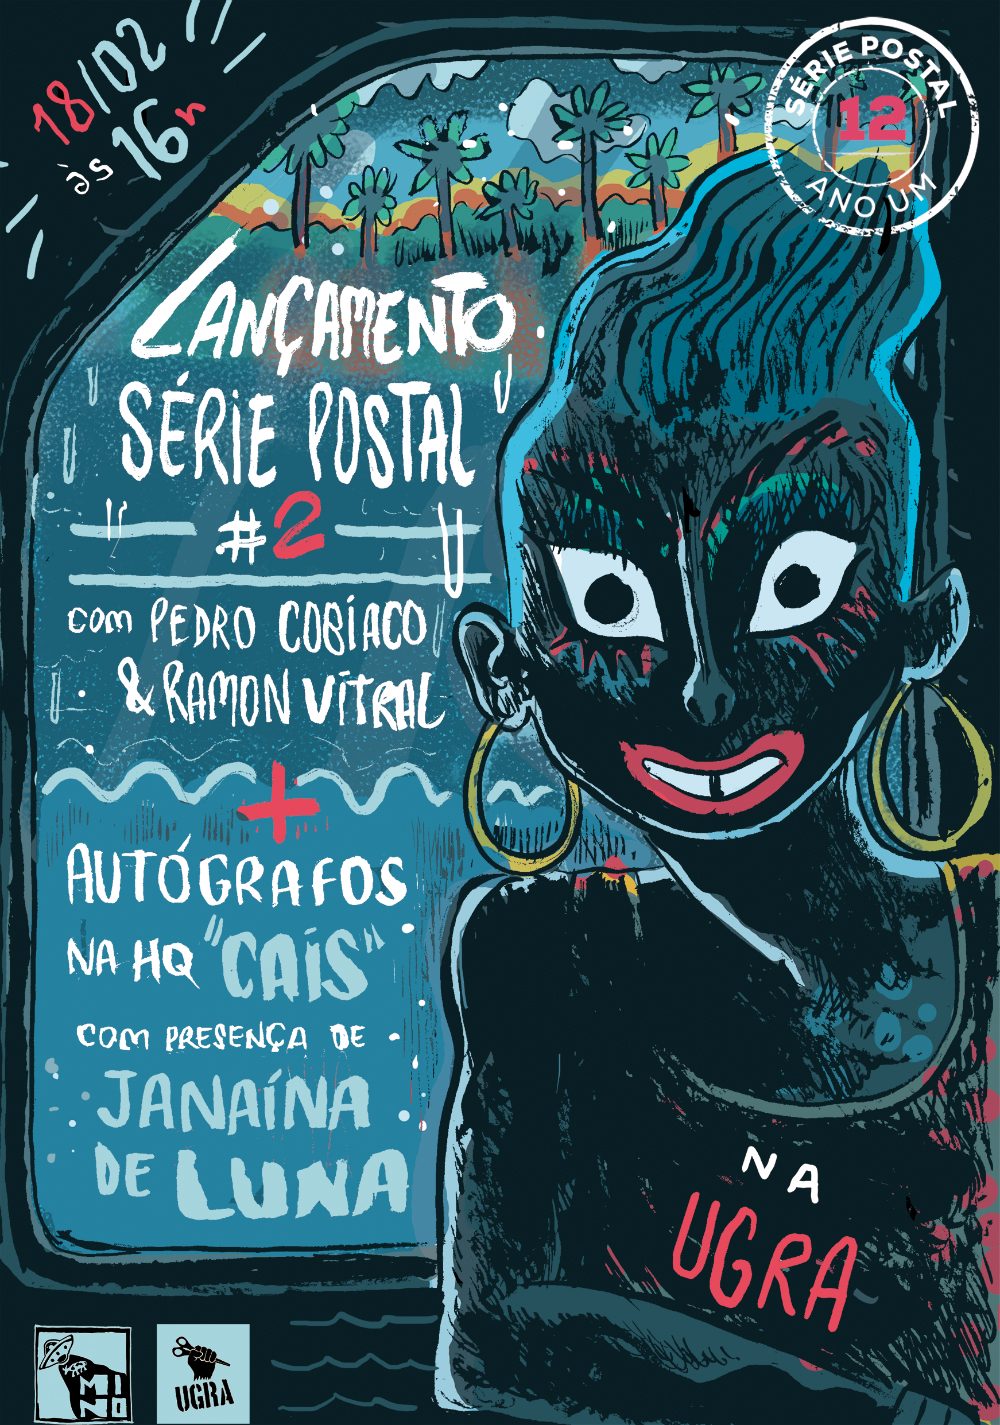 Série Postal: o cartaz produzido por Pedro Cobiaco para o lançamento do segundo número da coleção